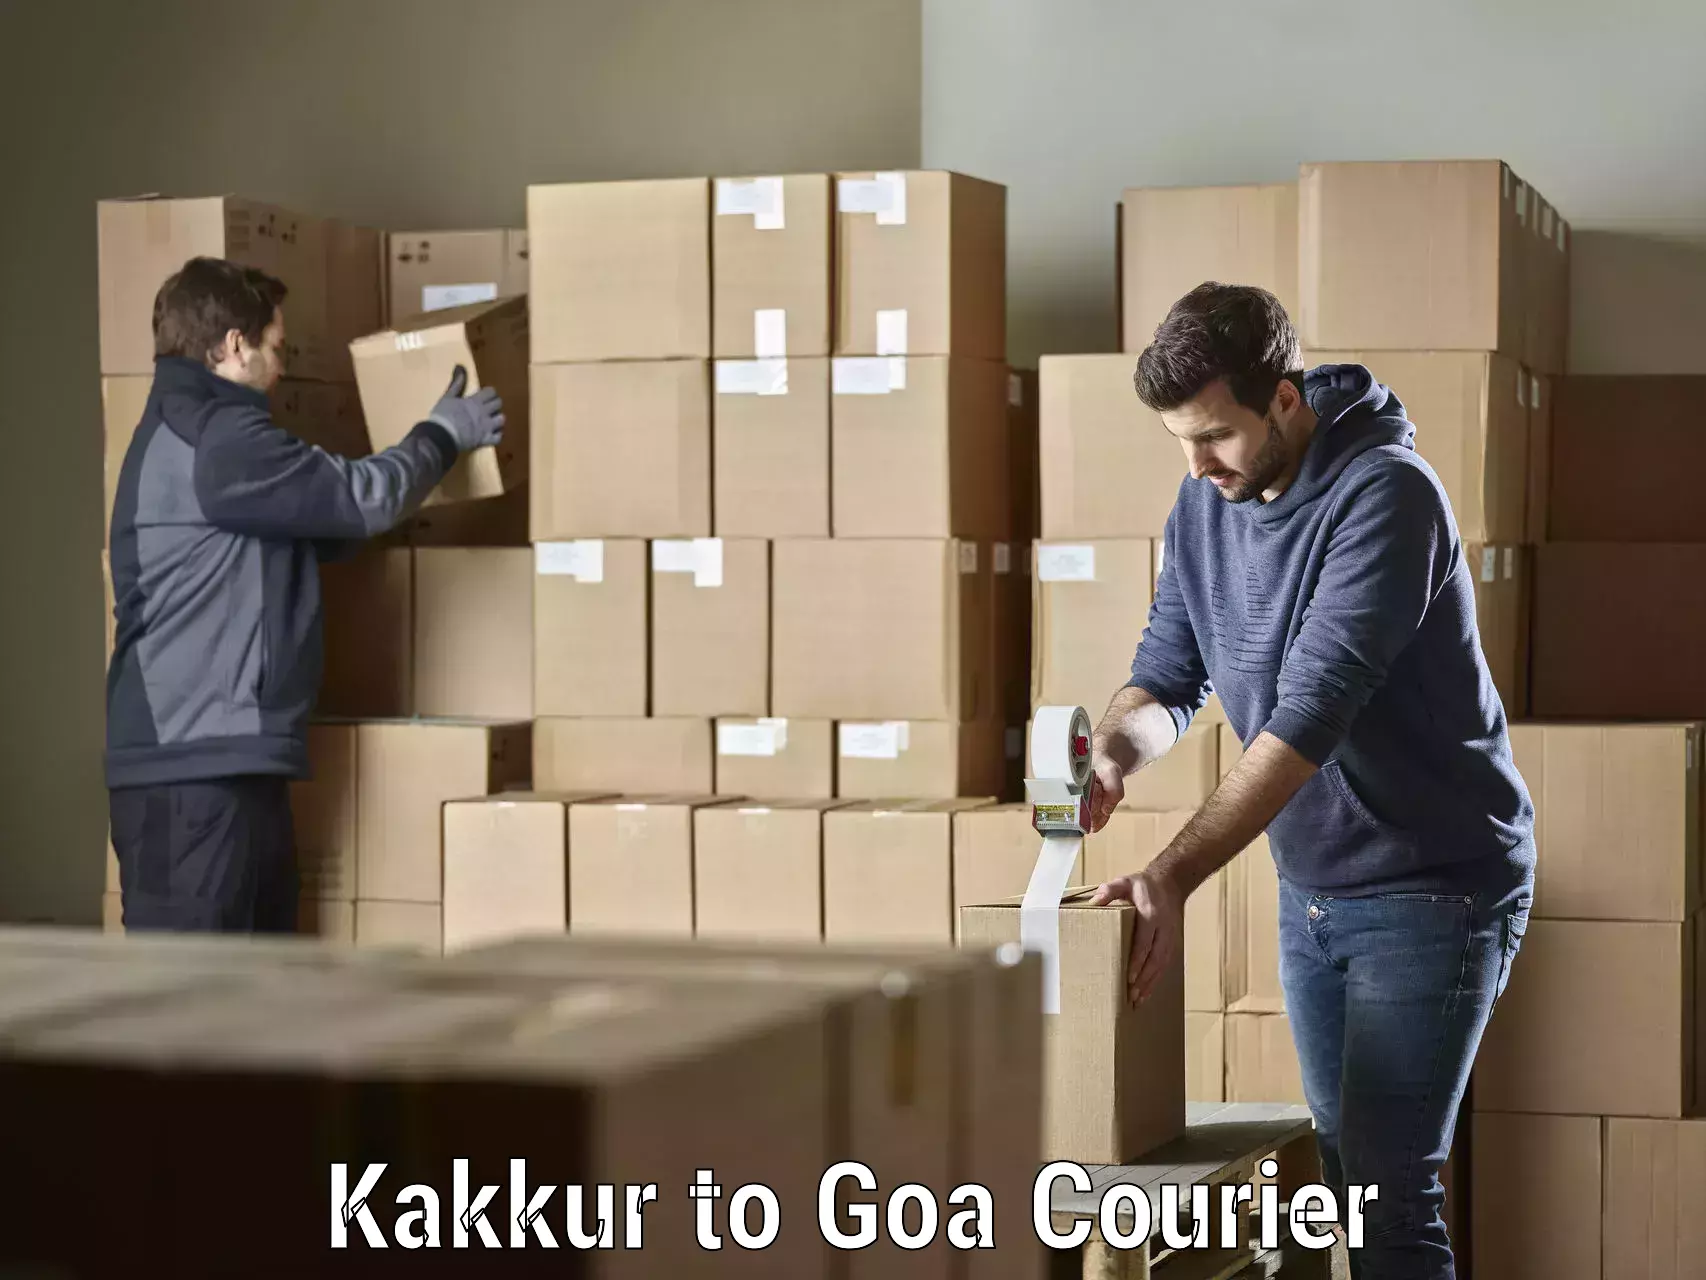 Urban courier service Kakkur to South Goa